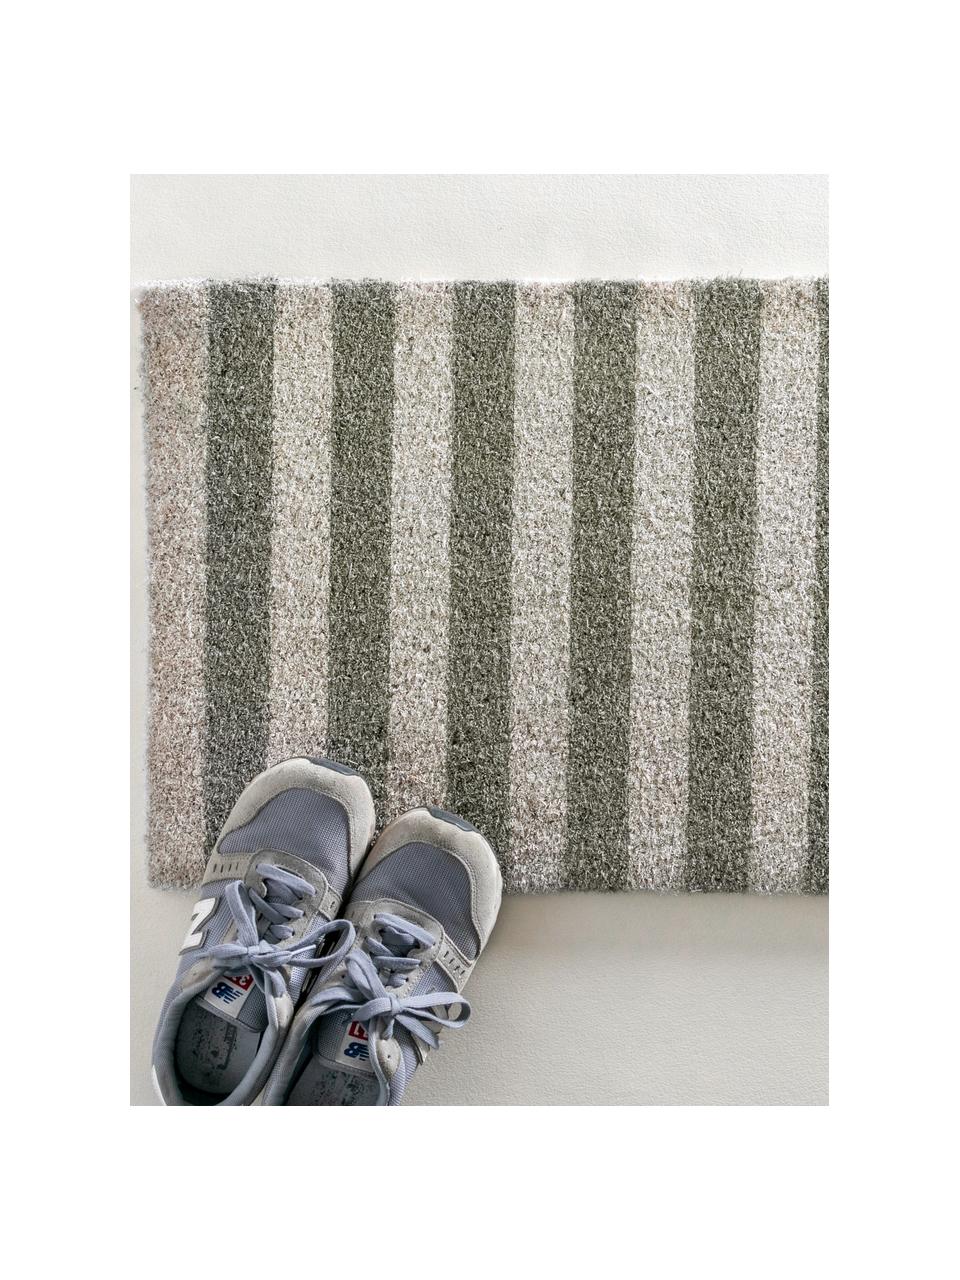 Fußmatte Grey Stripes, Oberseite: Kokosfaser, Unterseite: PCV, Grau, Weiß, B 45 x L 75 cm